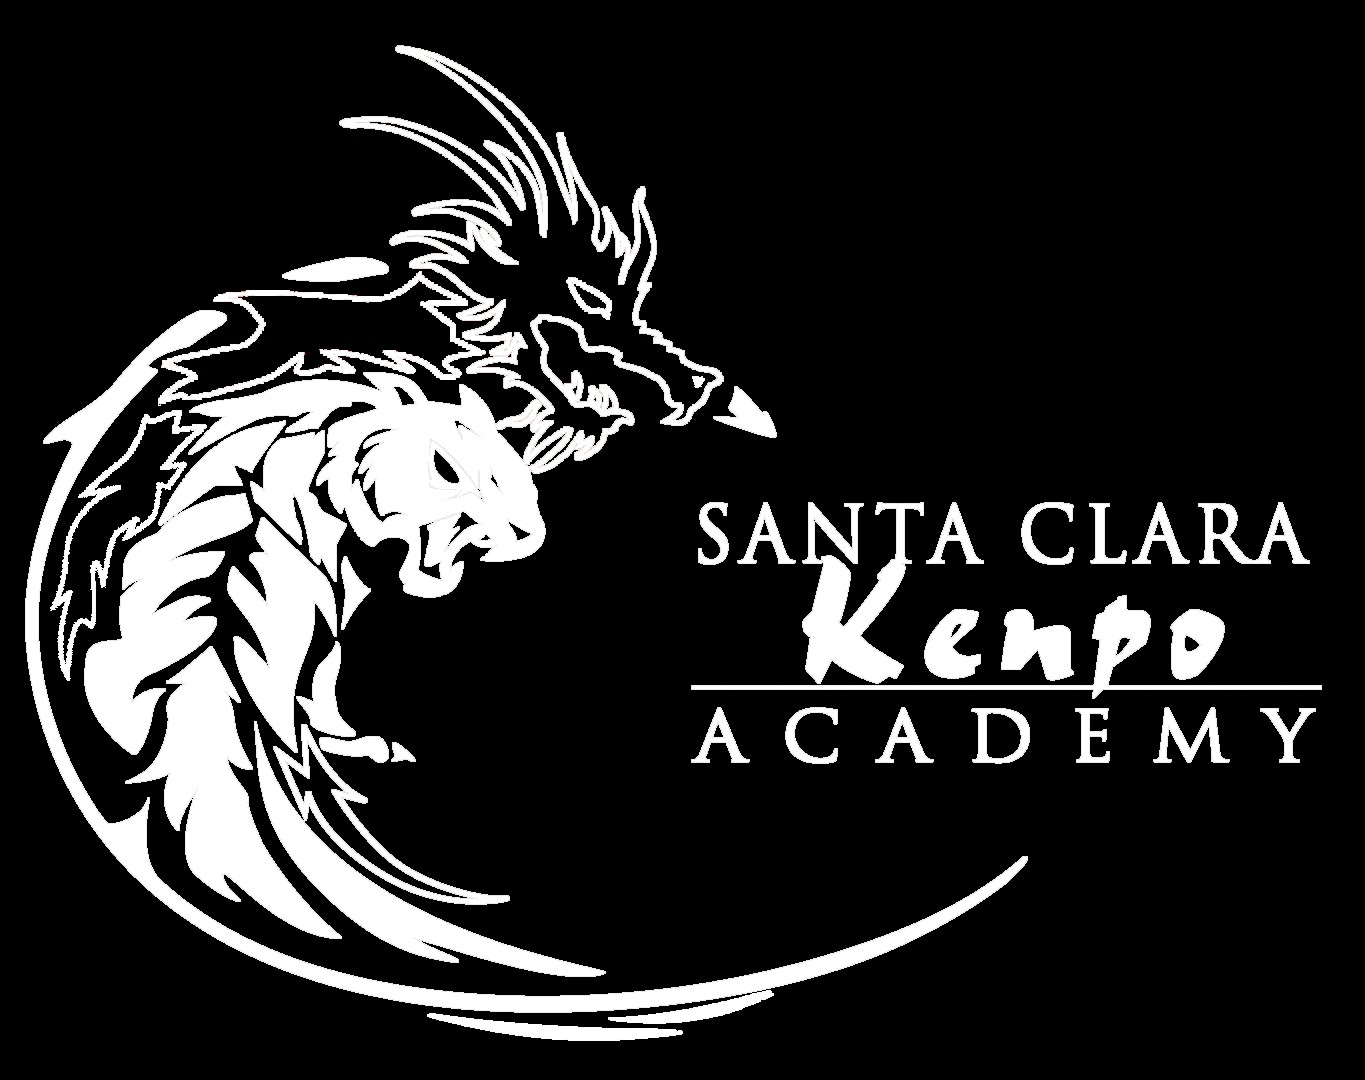 Santa Clara Kenpo Academy là một nơi lý tưởng cho những ai yêu thích võ thuật. Với một đội ngũ huấn luyện viên giỏi và chuyên nghiệp, Santa Clara Kenpo Academy tạo cơ hội cho mọi người để rèn luyện thể lực và kỹ năng võ thuật. Hãy cùng xem hình ảnh tại Santa Clara Kenpo Academy để có thêm động lực cho bản thân nhé!